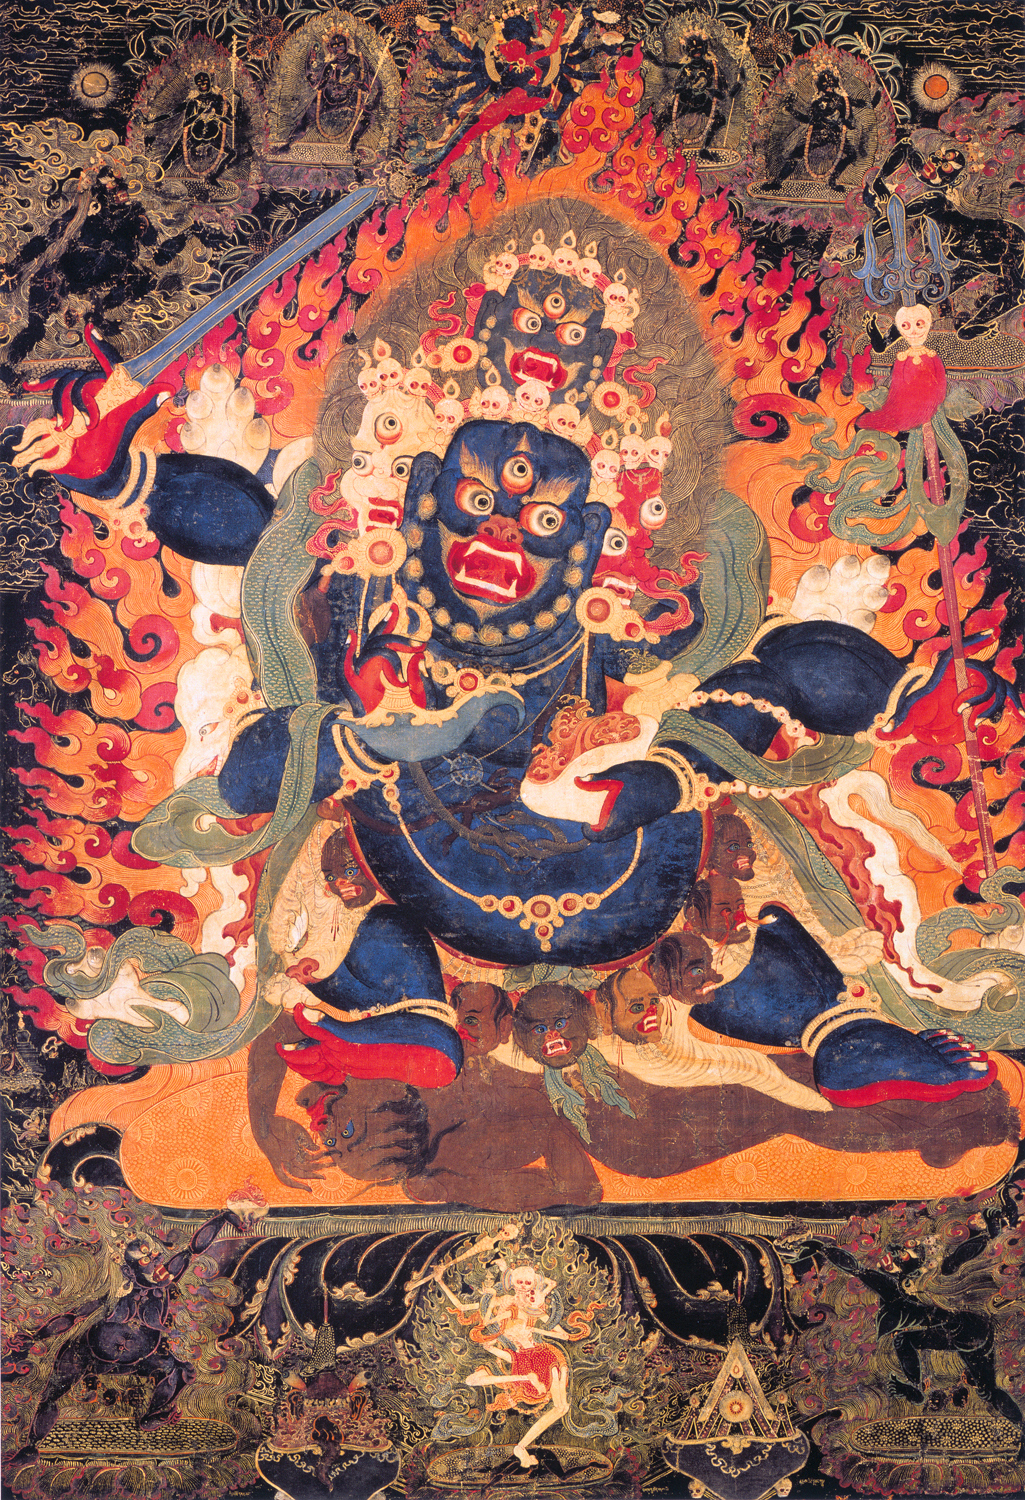 Das Böse im Buddhismus - Wie Buddhisten das Böse verstehen